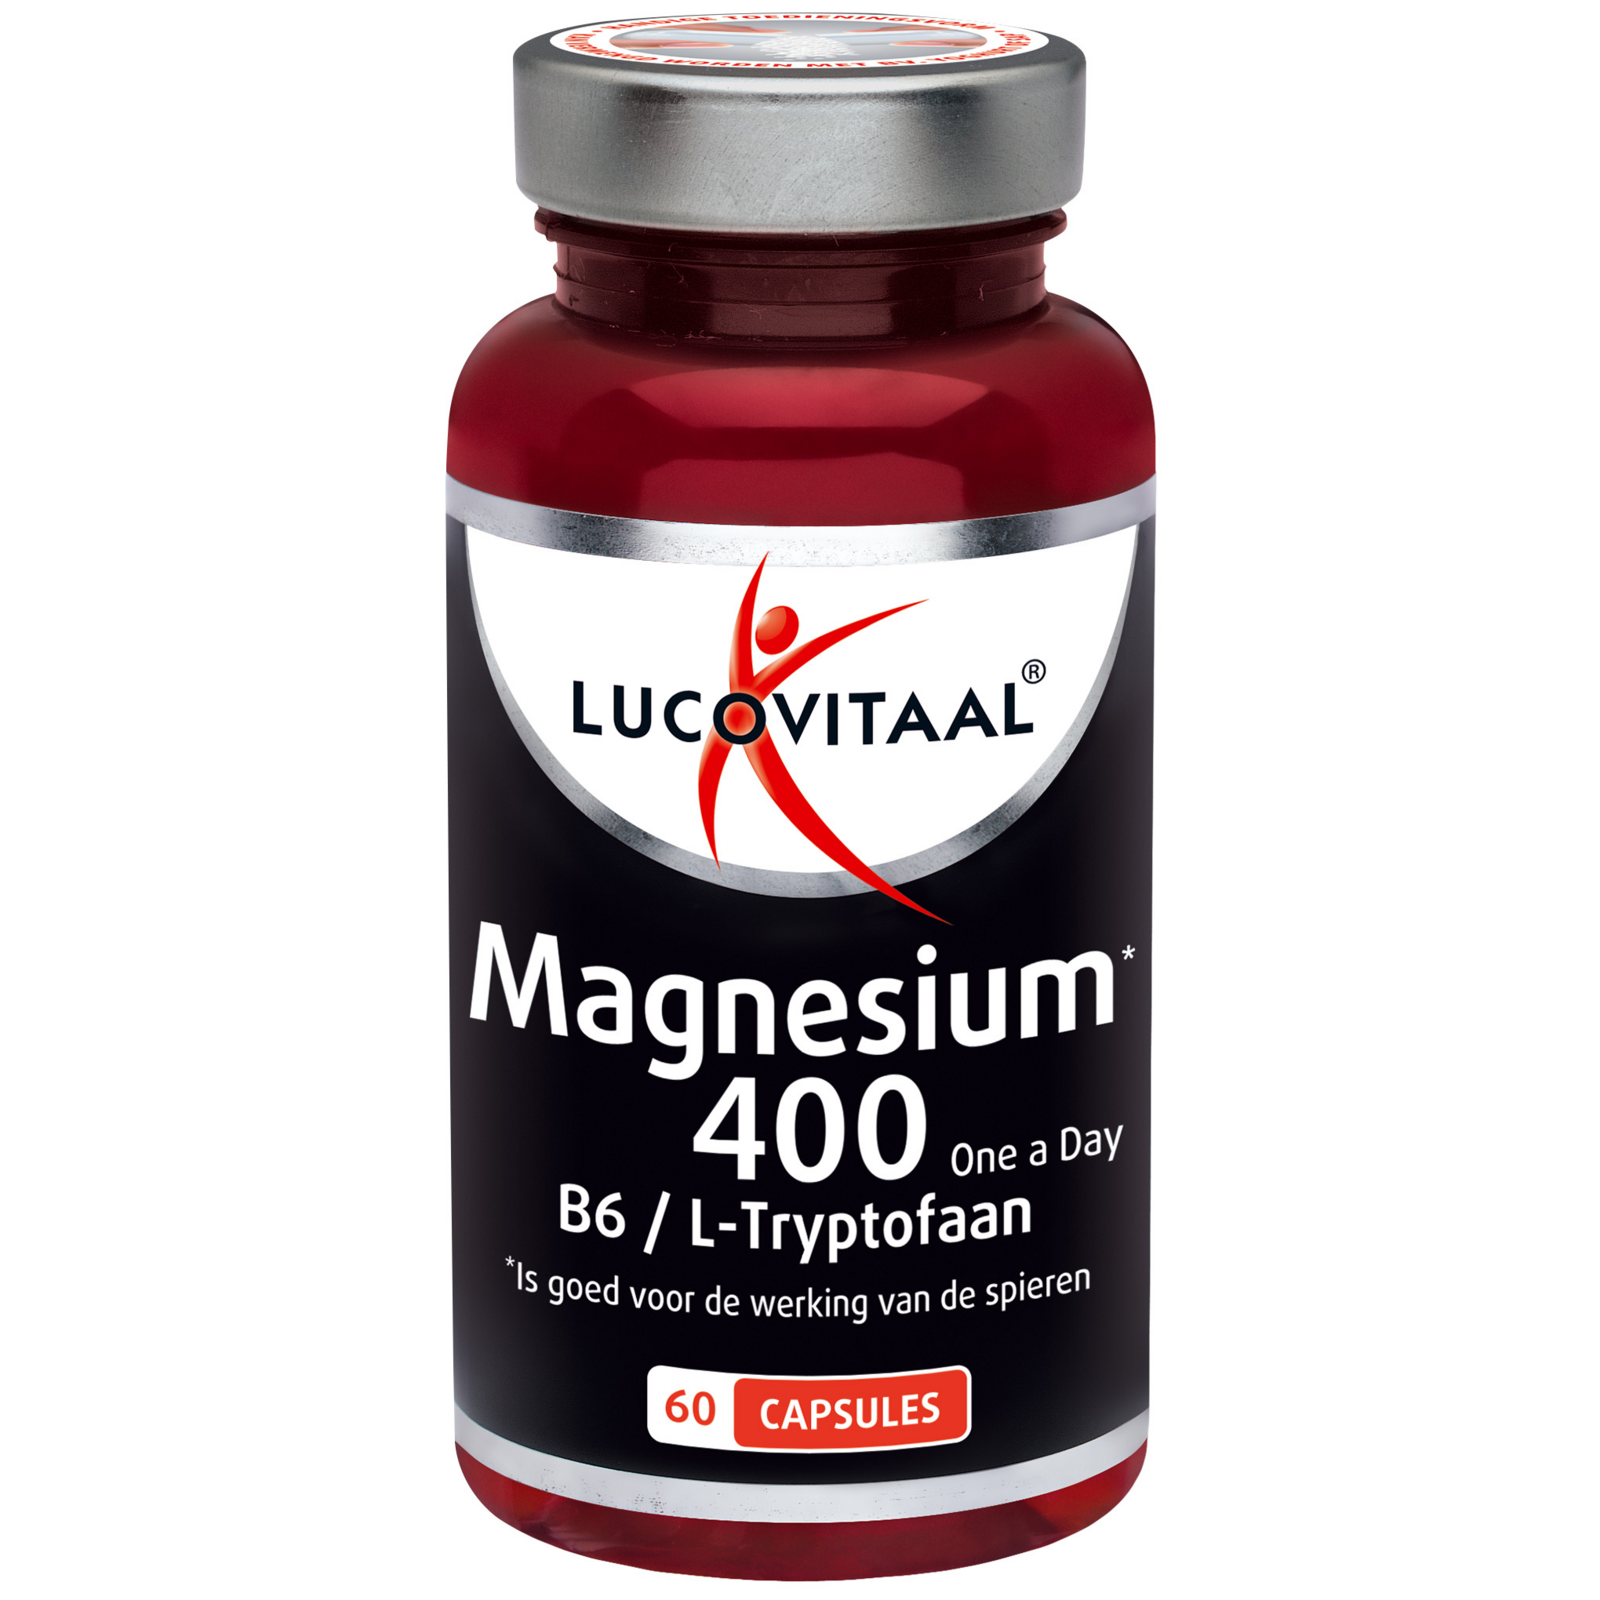 Nauwgezet Een computer gebruiken Ontmoedigen Lucovitaal Magnesium 400 met Vitamine B6 & L-Tryptofaan capsules kopen?  Kiezen en vergelijken